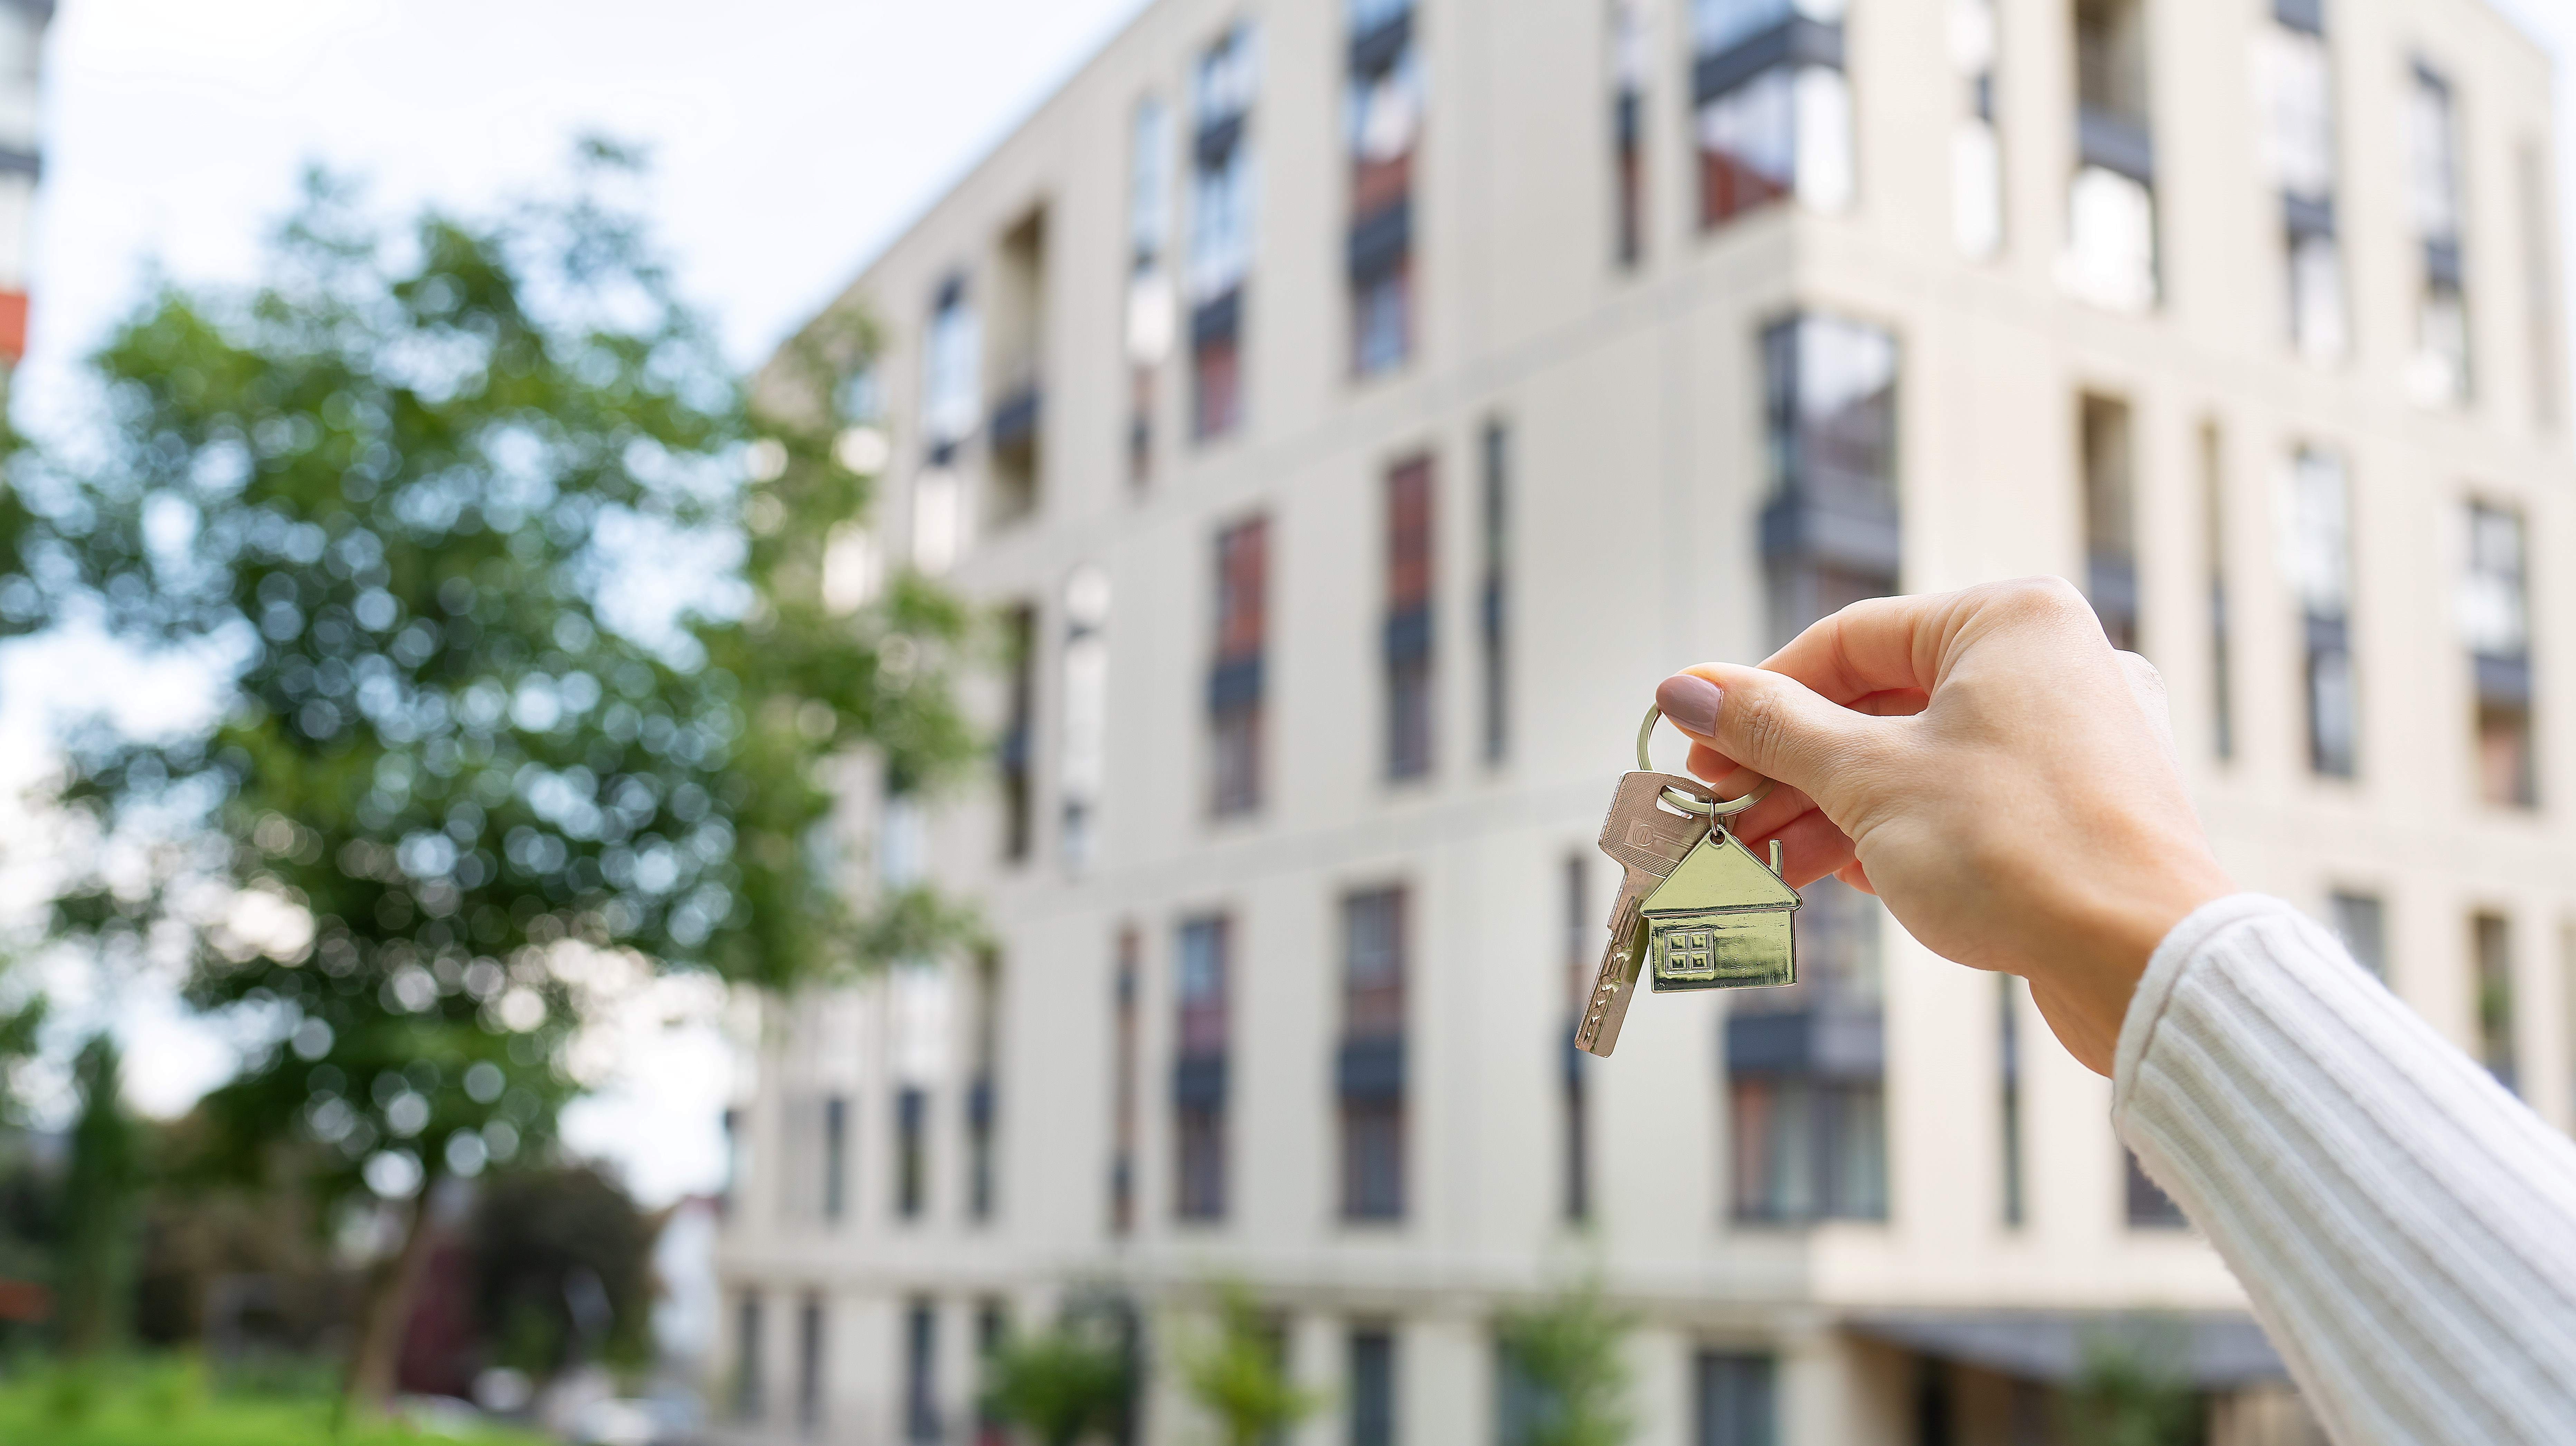 Protecting Condominium Consumers through Effective Regulation